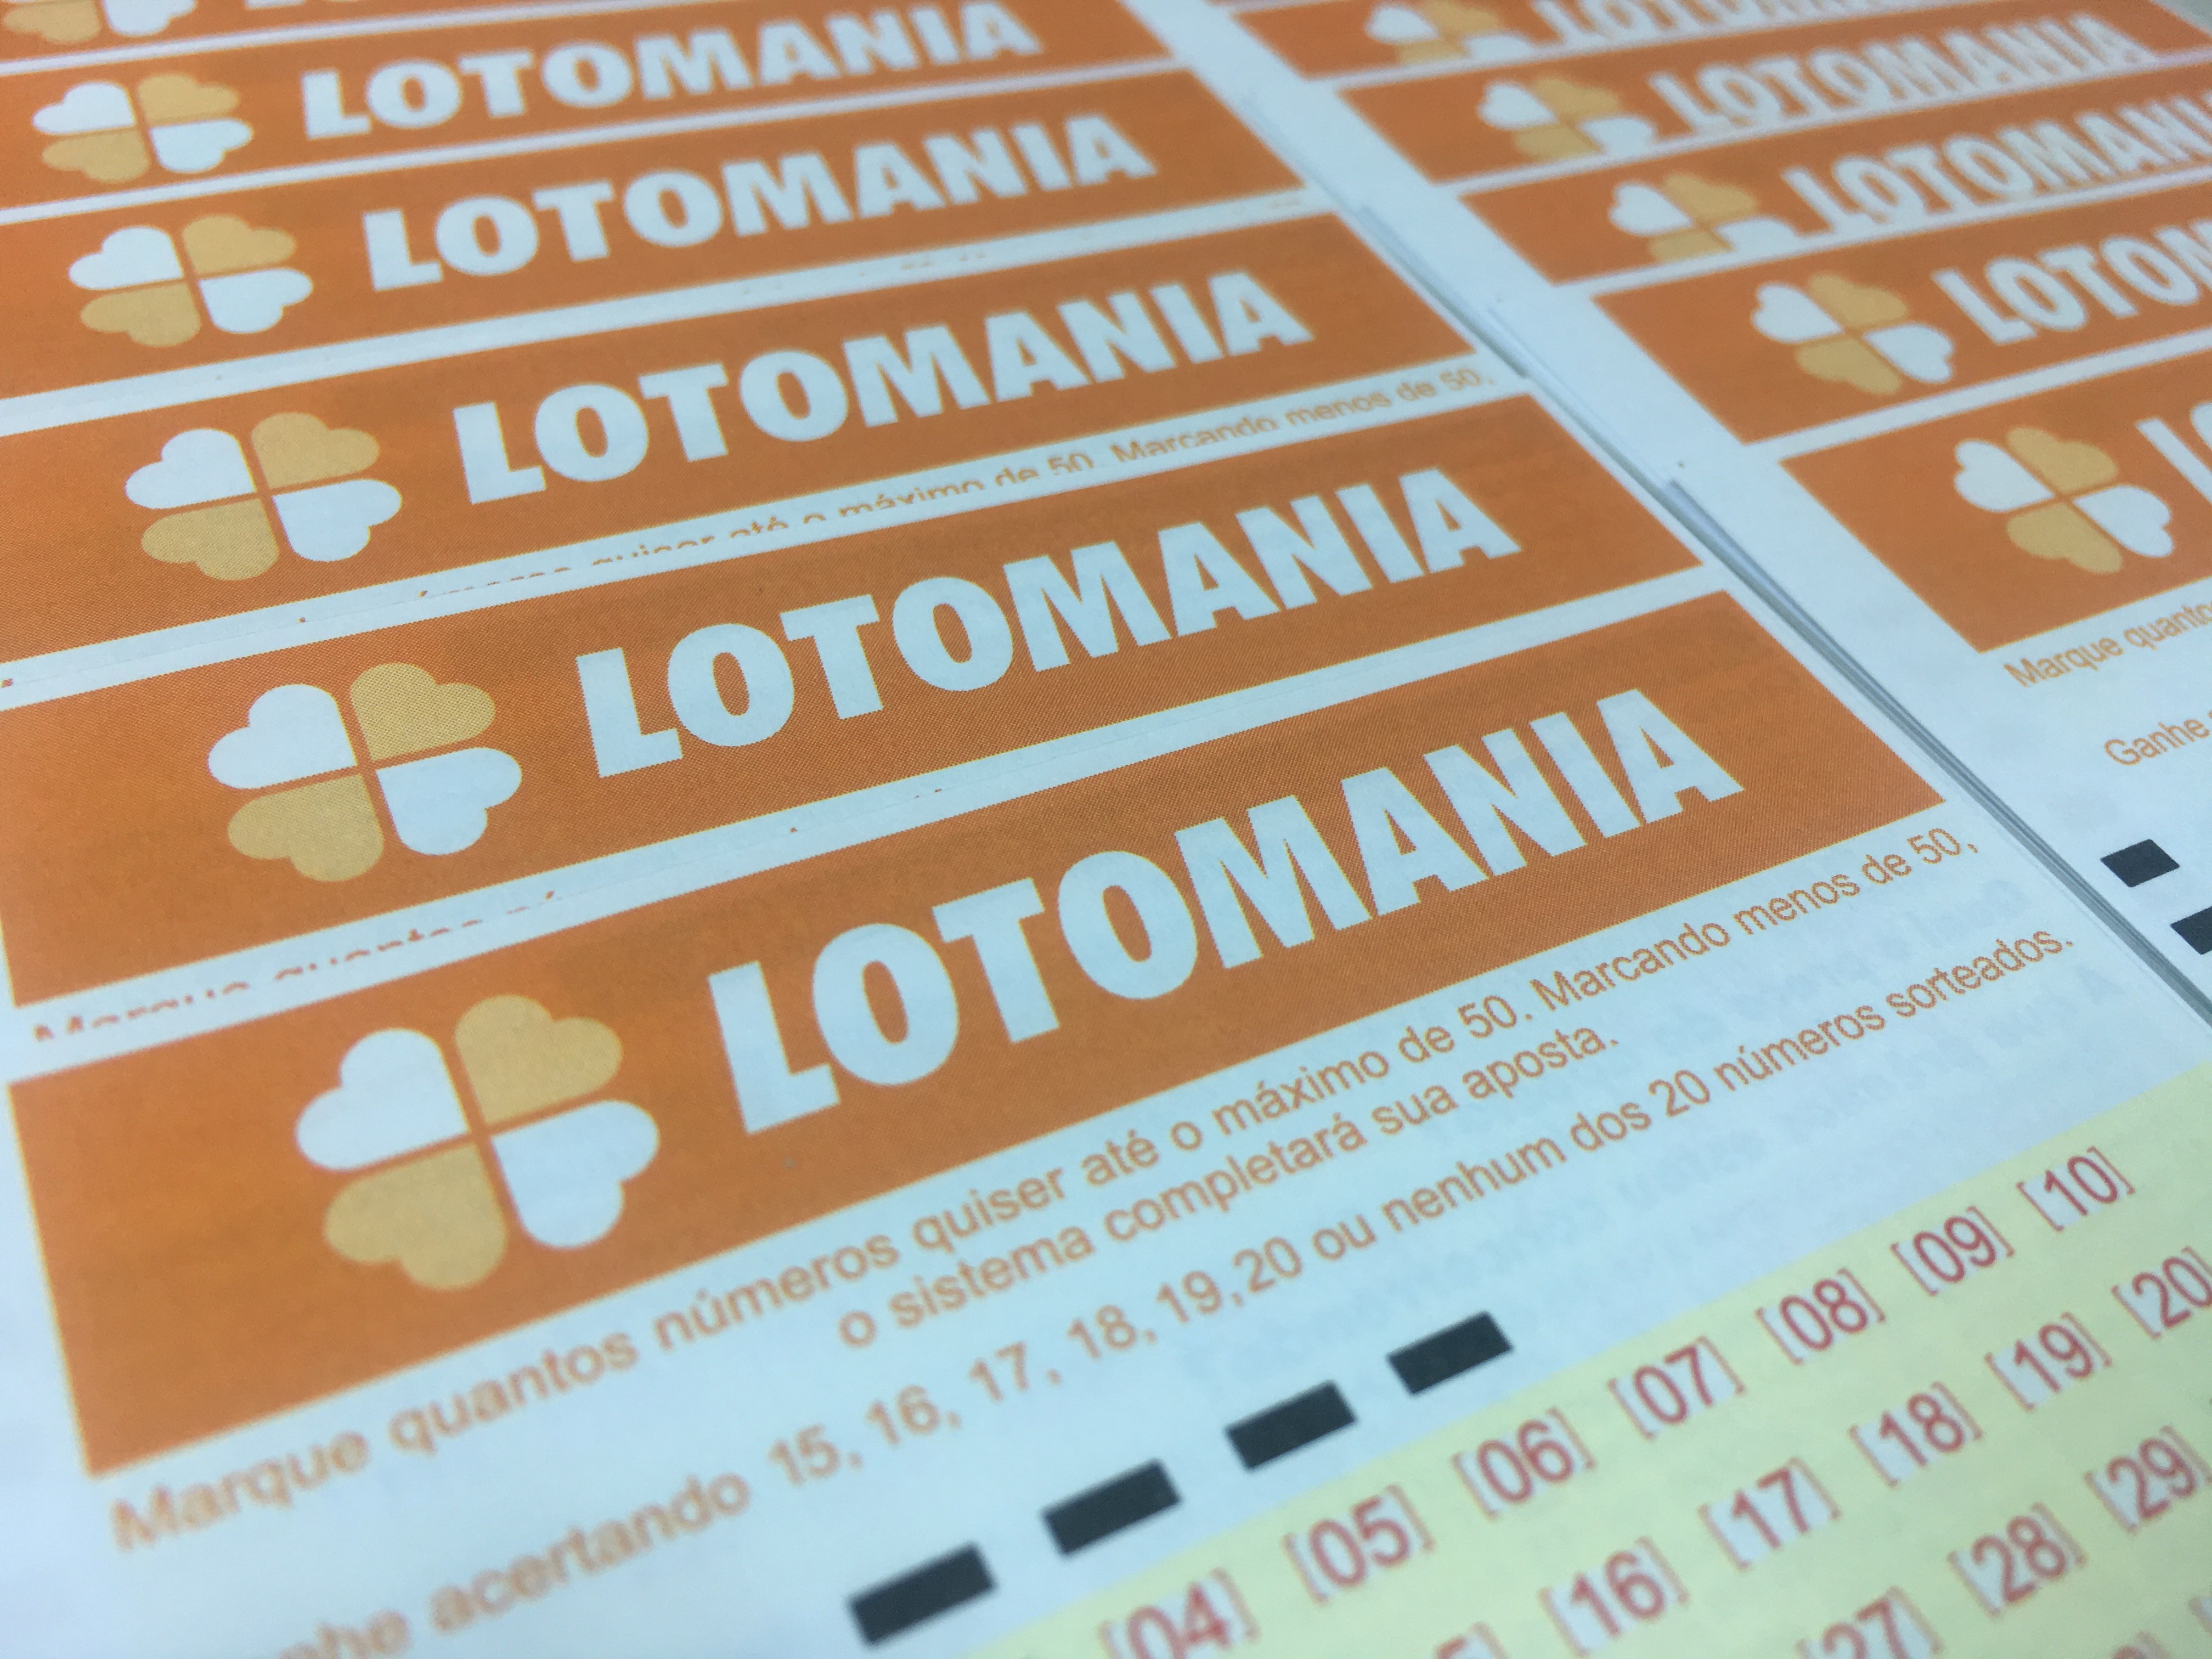 Apostador de Taubaté erra todos os números sorteados e fatura R$ 112 mil na Lotomania